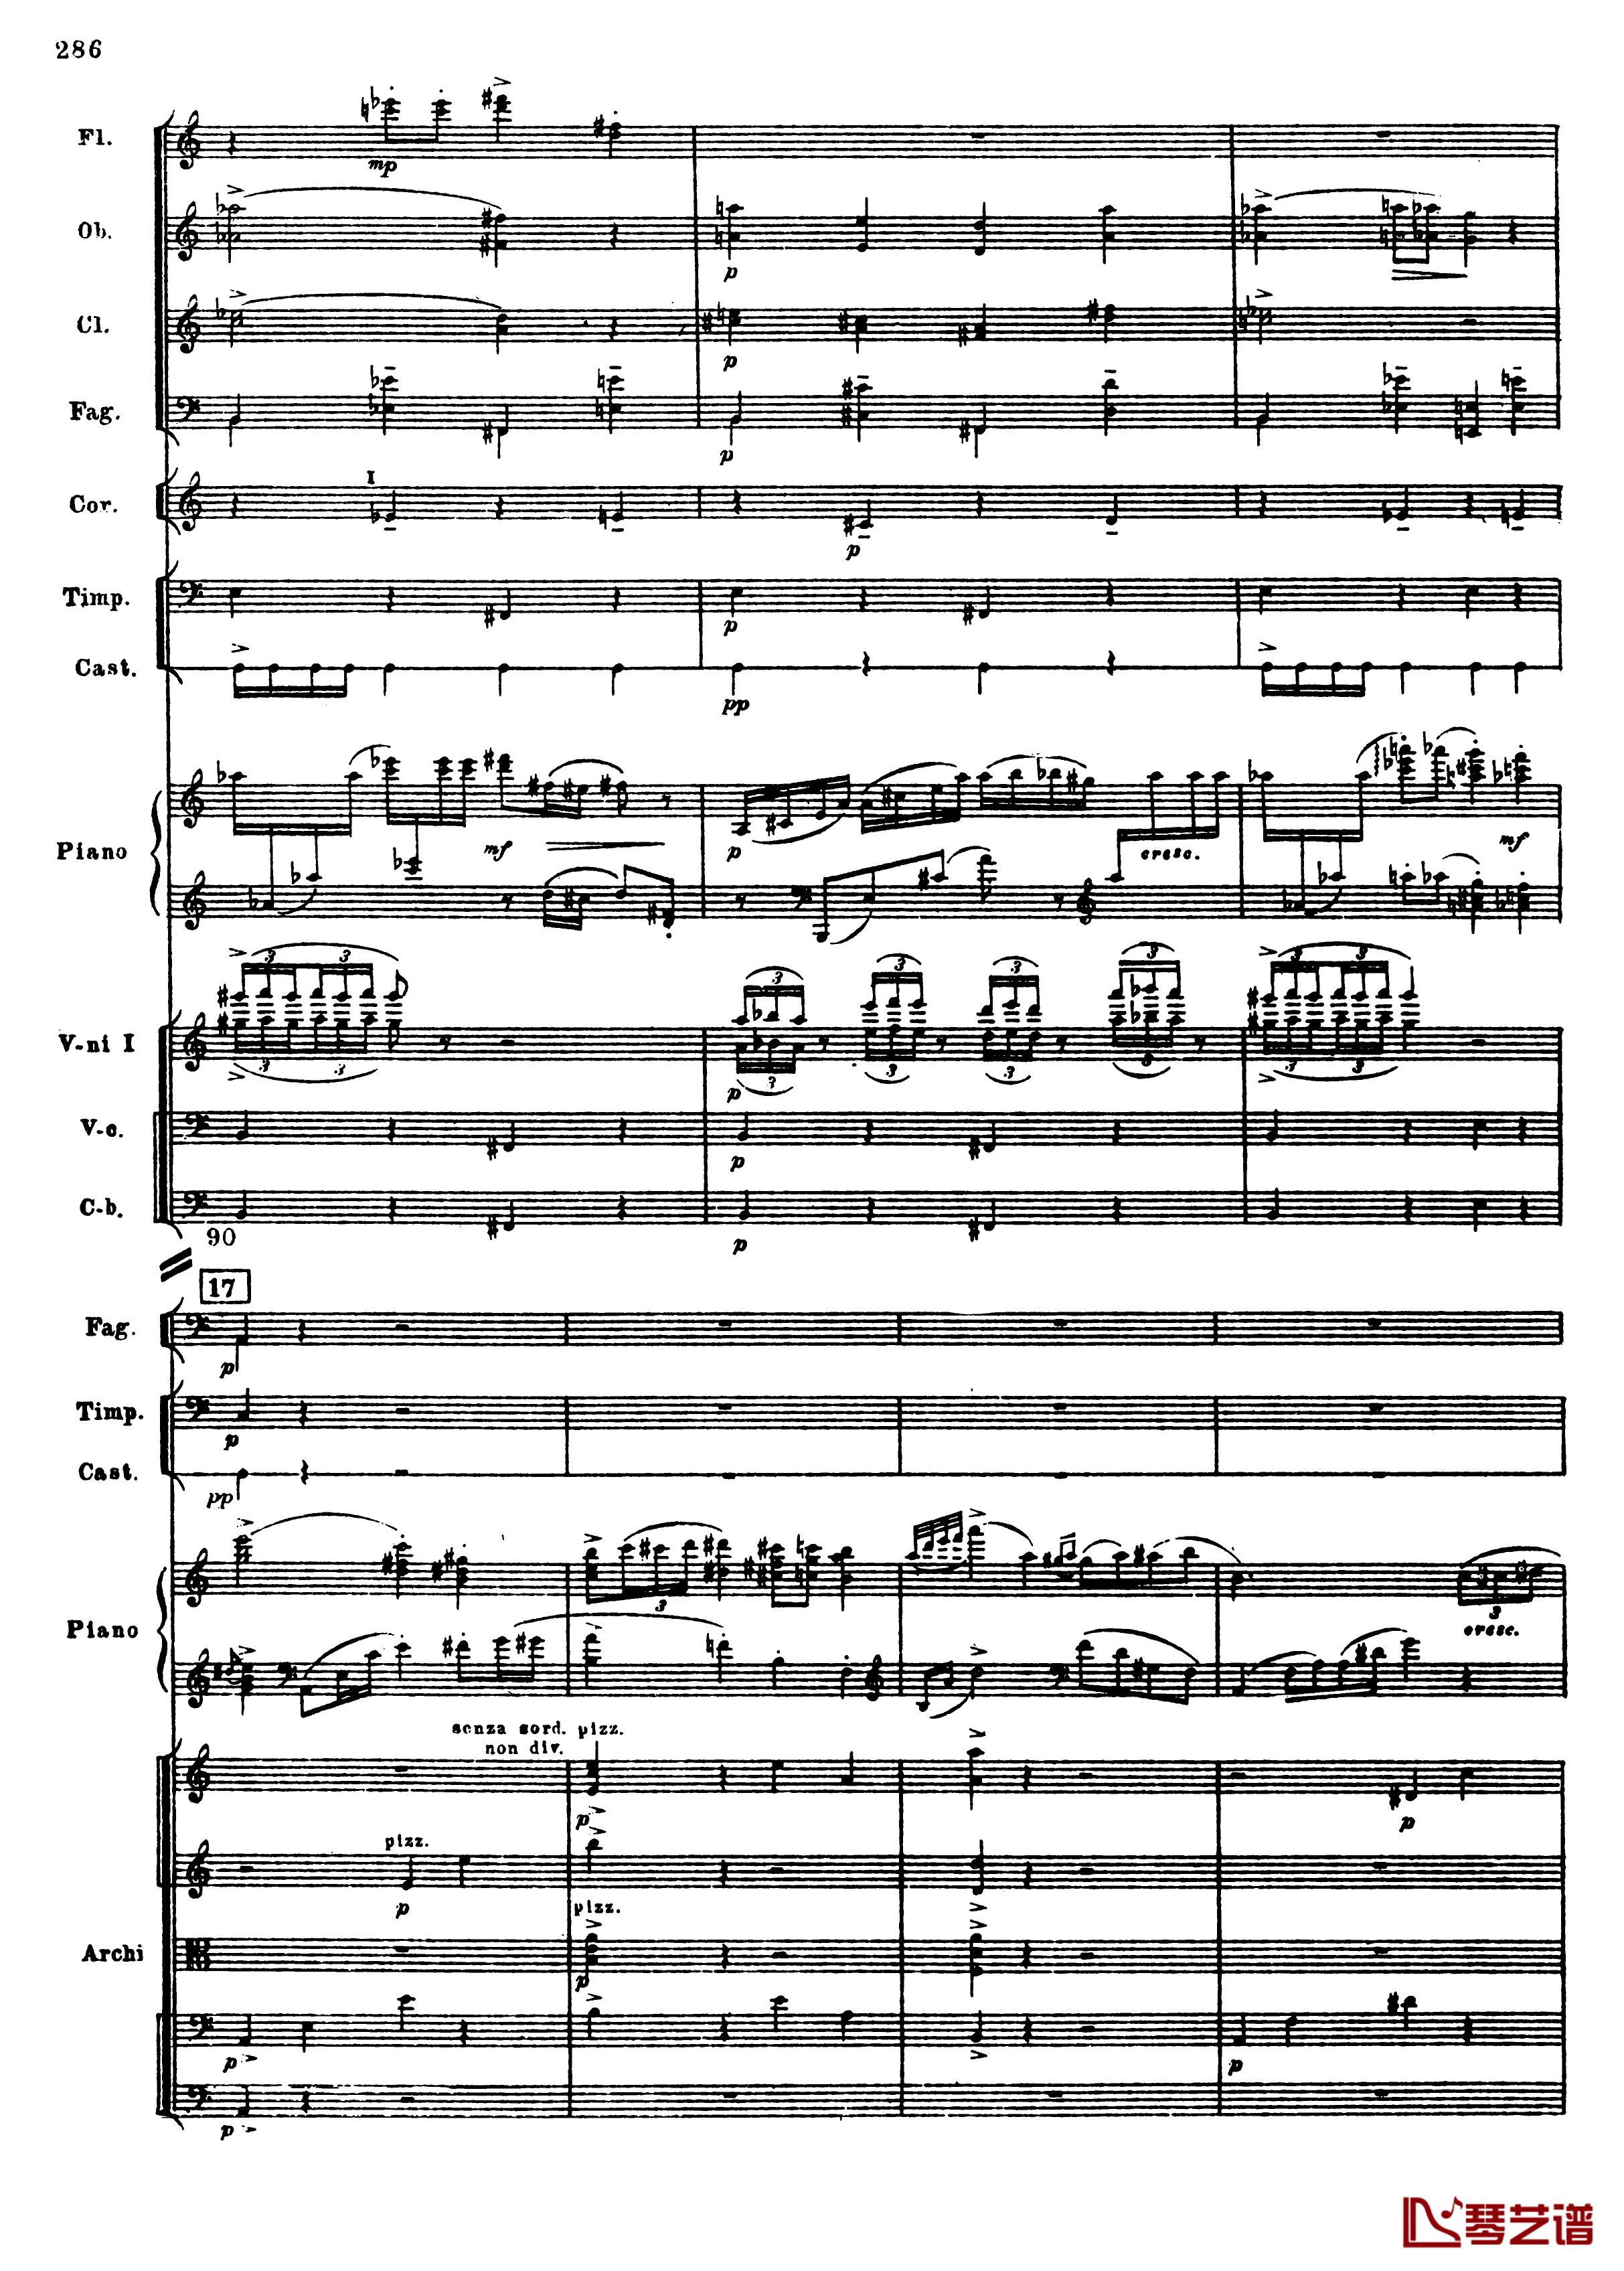 普罗科菲耶夫第三钢琴协奏曲钢琴谱-总谱-普罗科非耶夫18